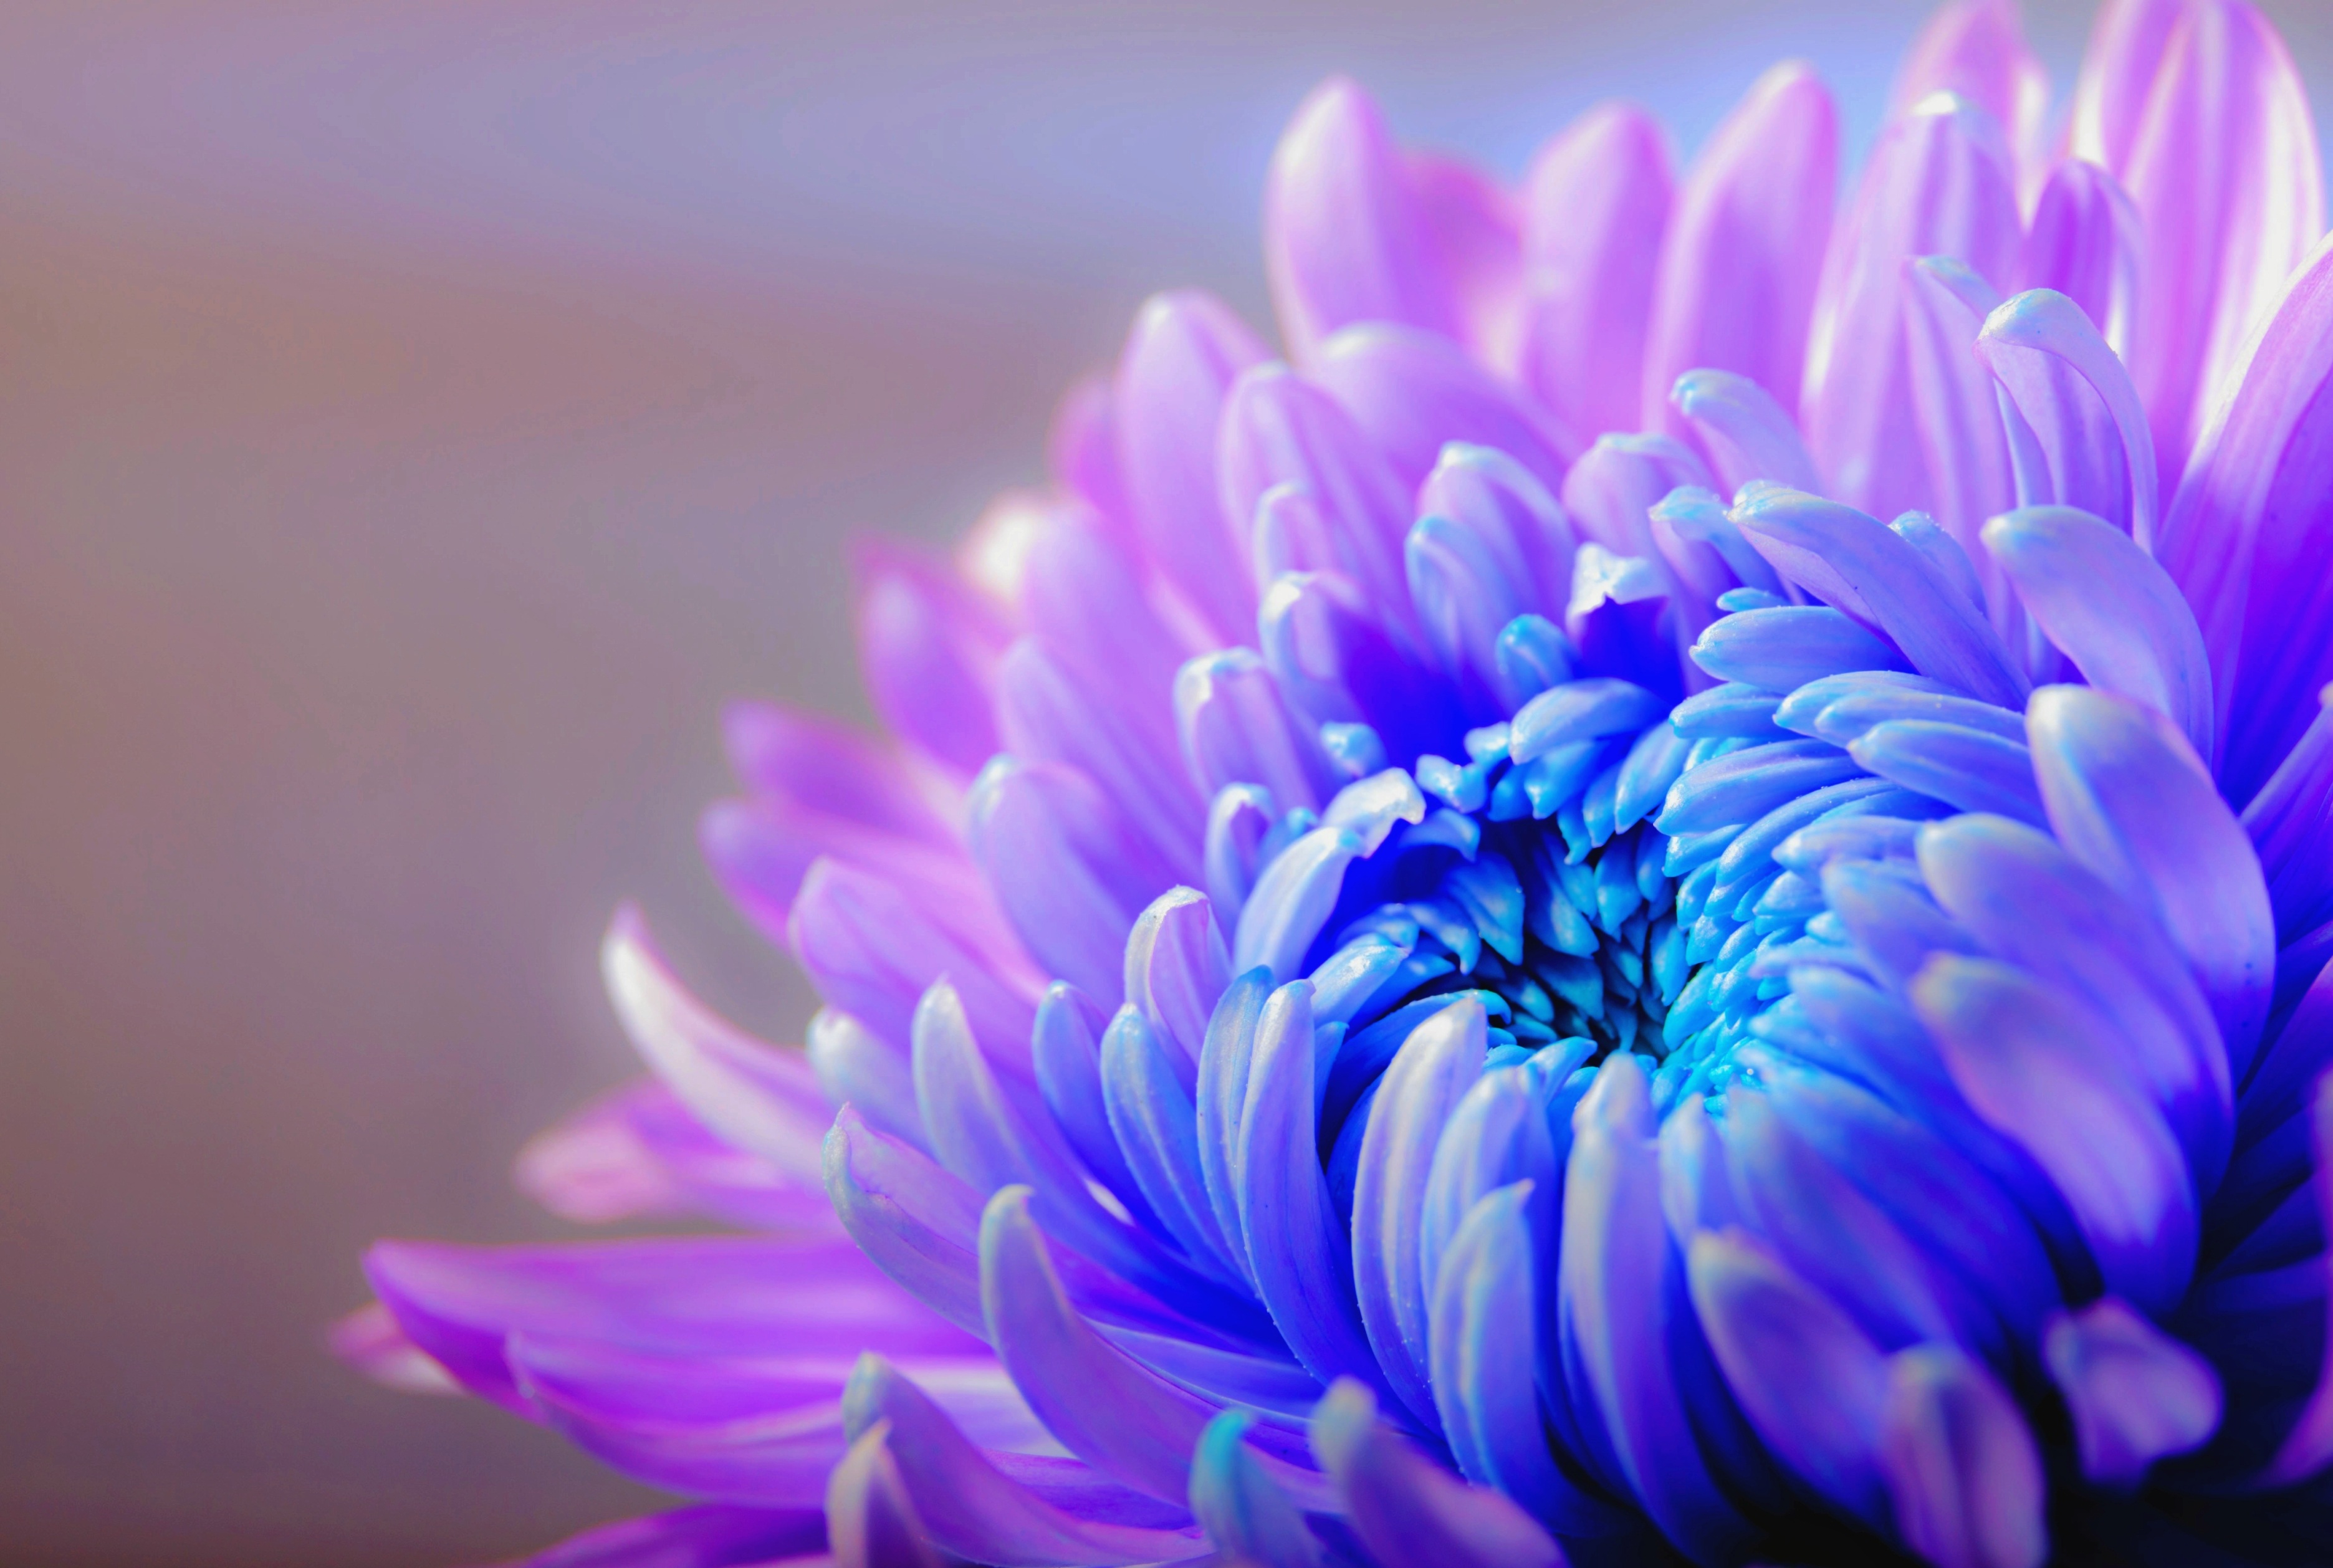 Hoa cúc tím sẽ làm tan đi mệt mỏi trong cuộc sống hối hả của bạn. Hãy chiêm ngưỡng những bông hoa tím tinh khôi ấy, bạn sẽ cảm nhận được sự thanh thản và yên bình đến khó tả.